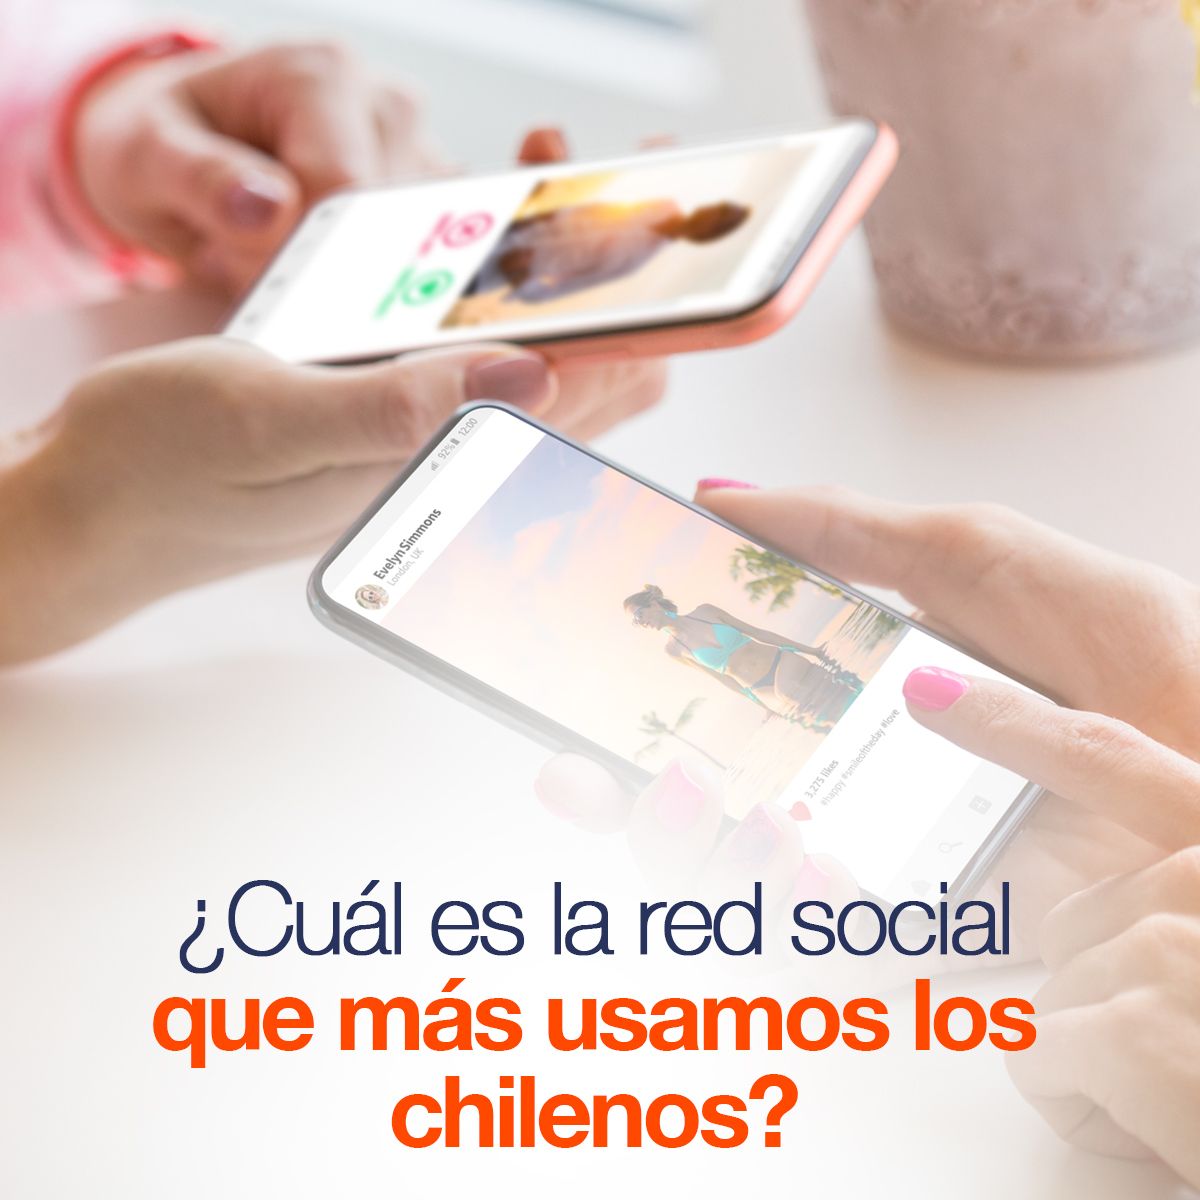 ¿Cuál es la red social que más están usando los chilenos?